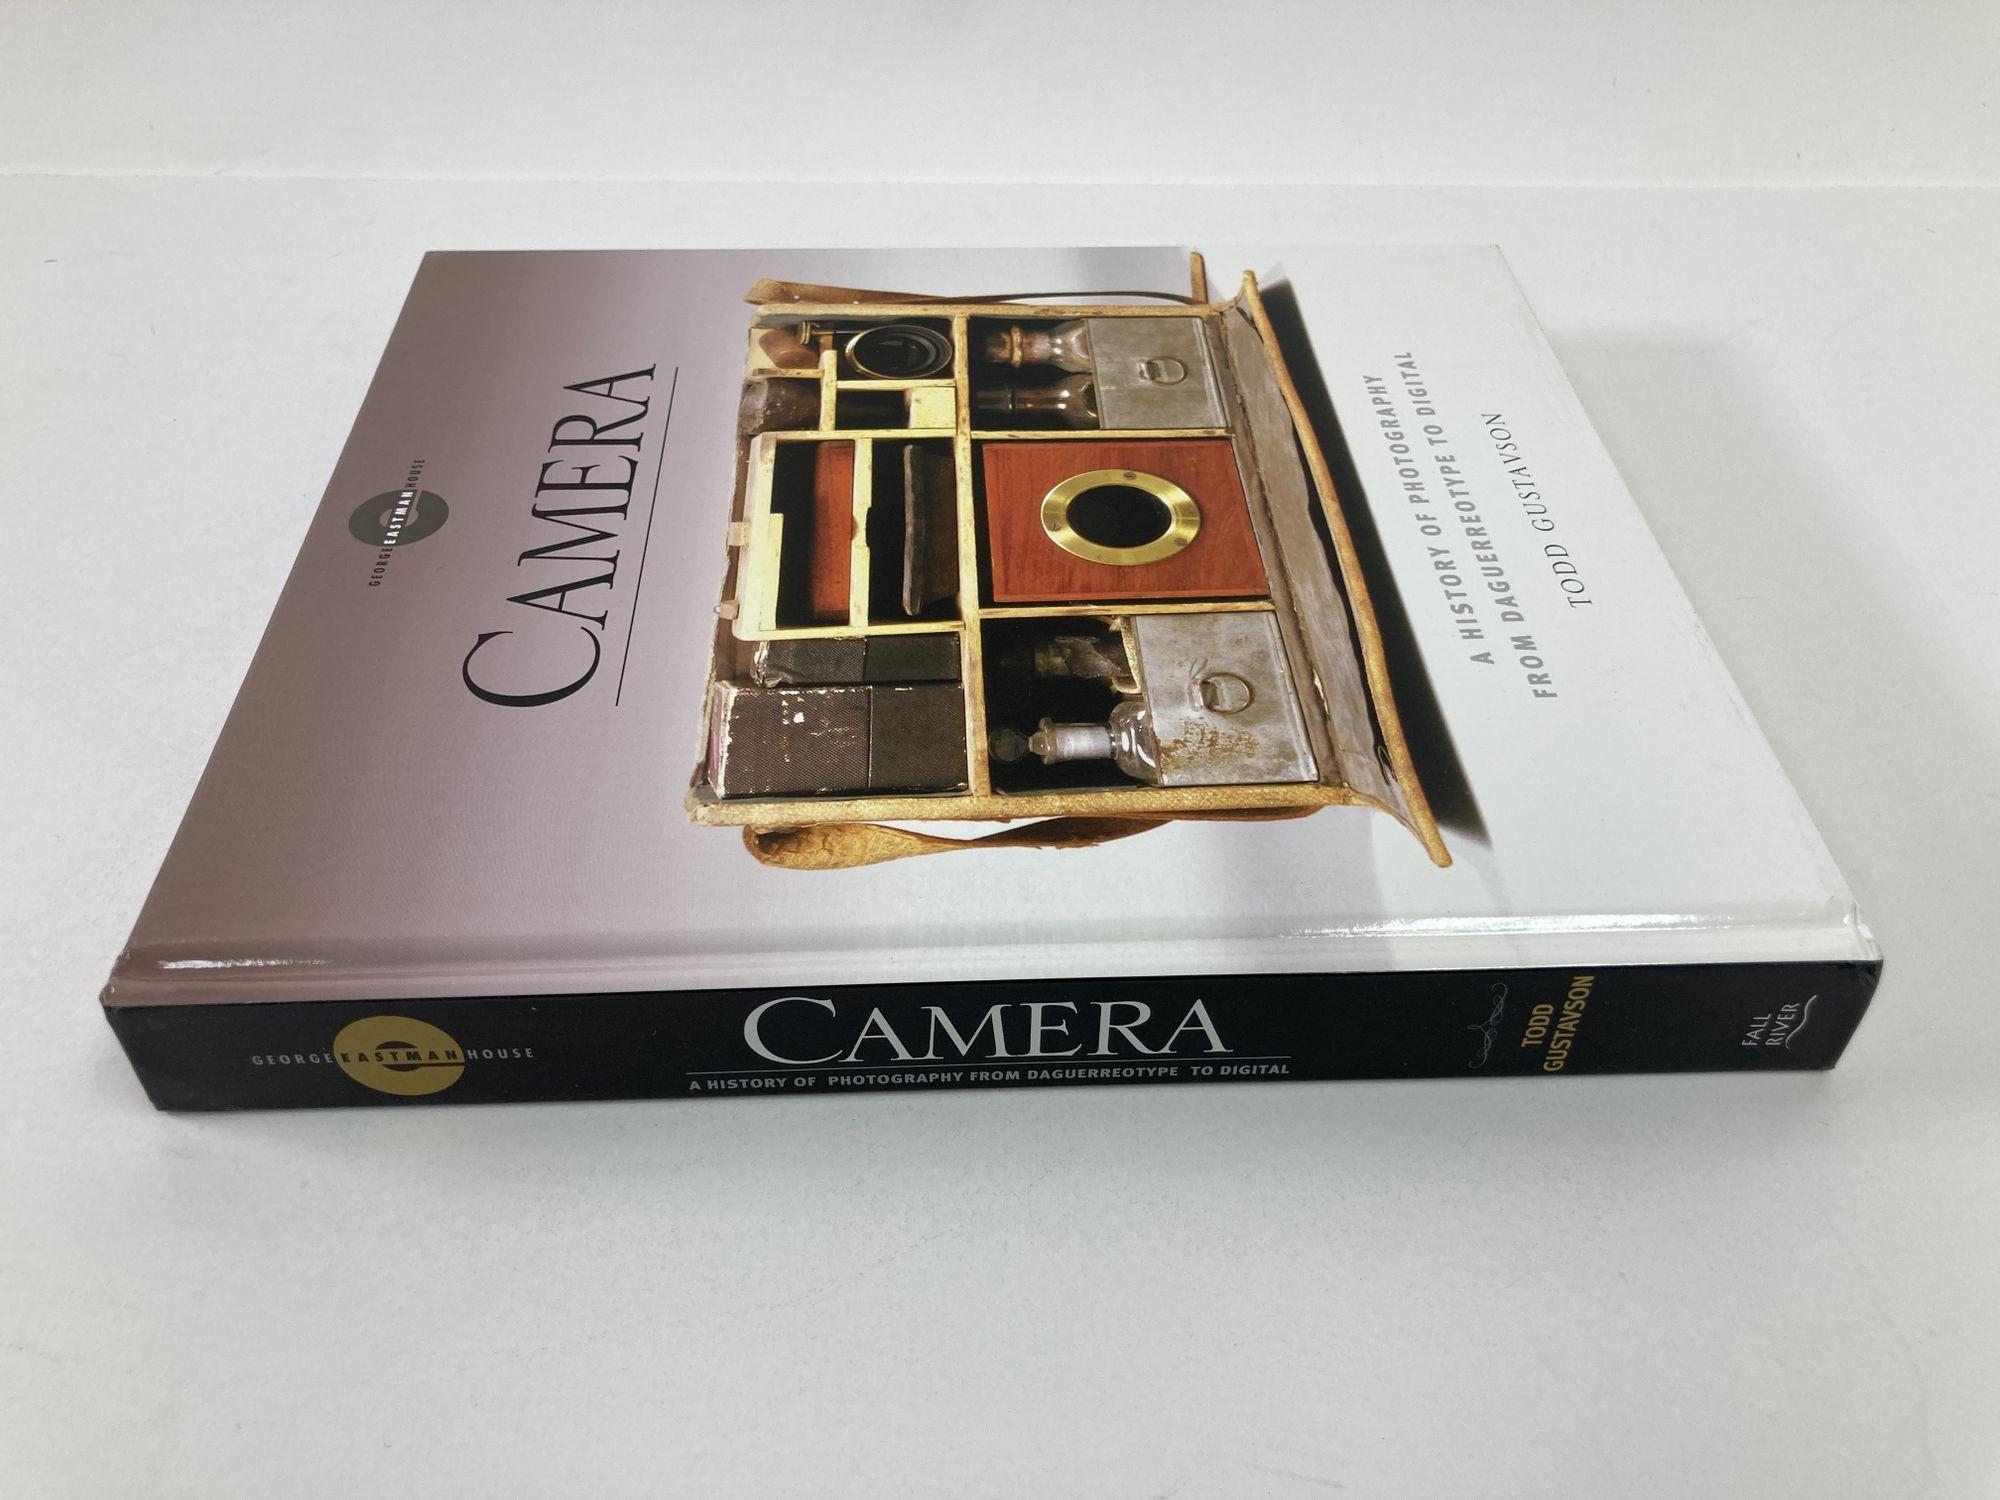 Camera Camera, Eine Geschichte der Fotografie von der Daguerreotypie bis zur Digitale von Todd Gustavson (amerikanisch) im Angebot